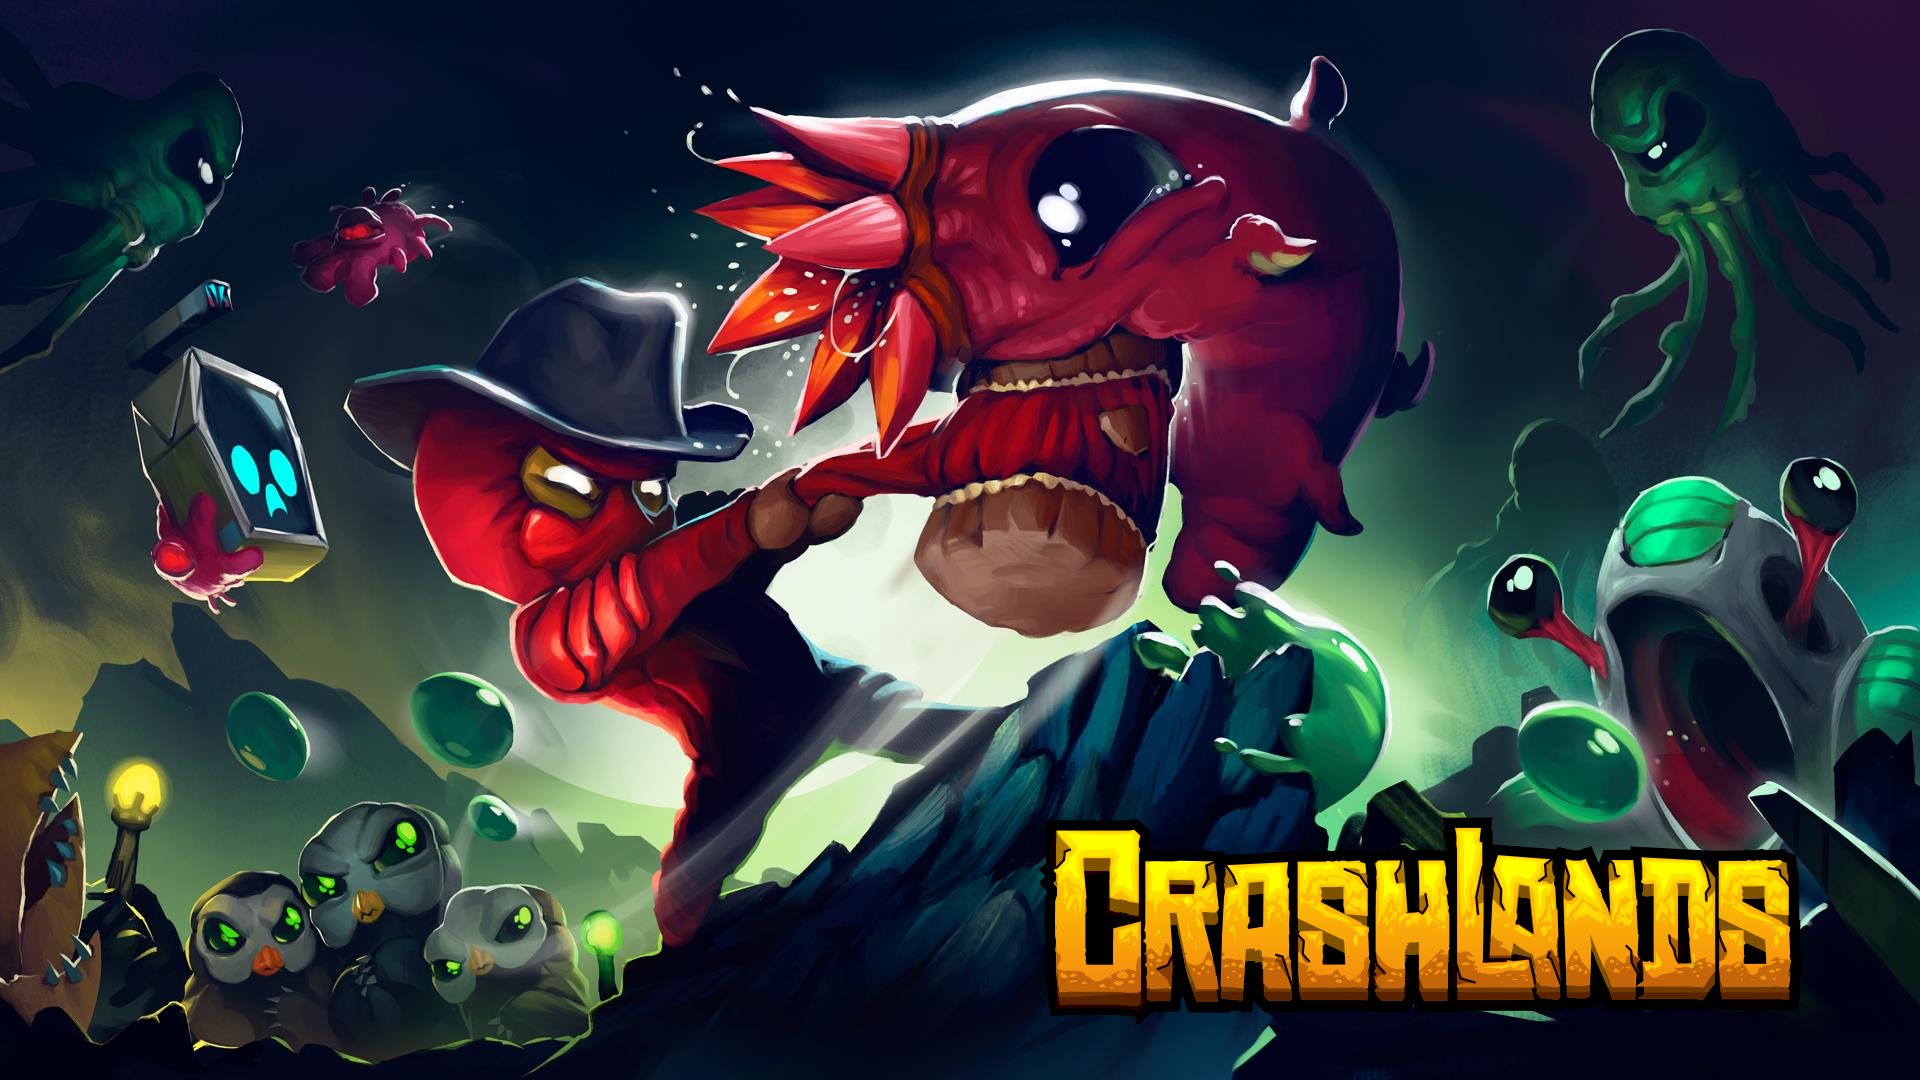 Video Game Crashlands HD Wallpaper | Background Image